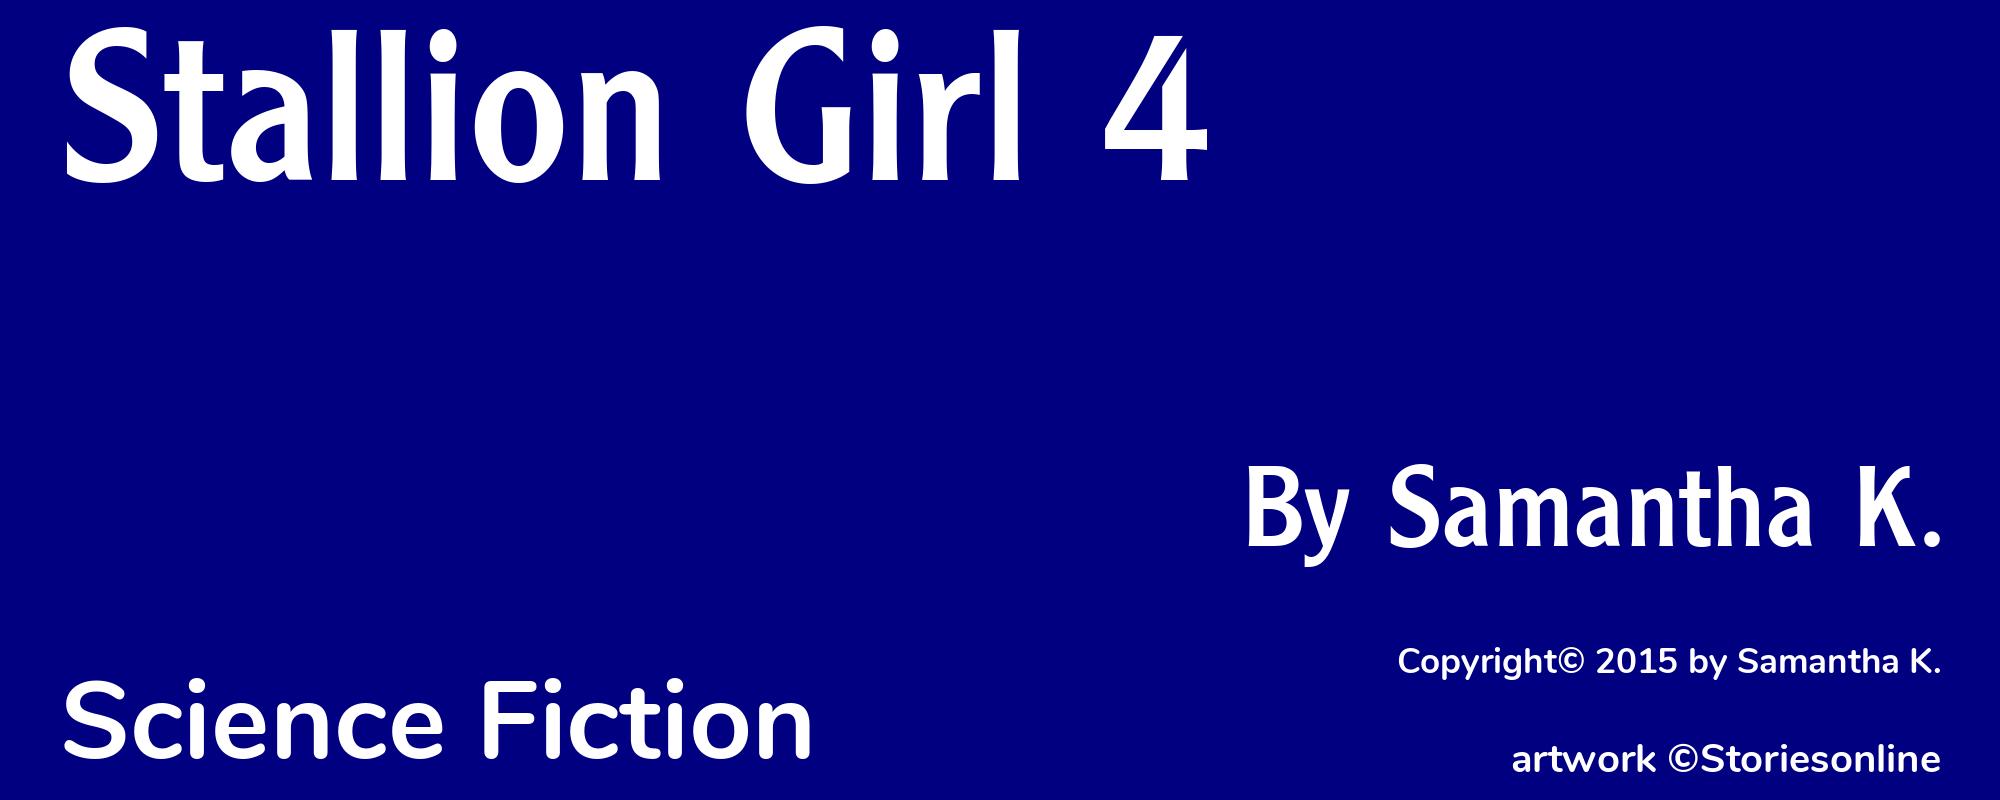 Stallion Girl 4 - Cover